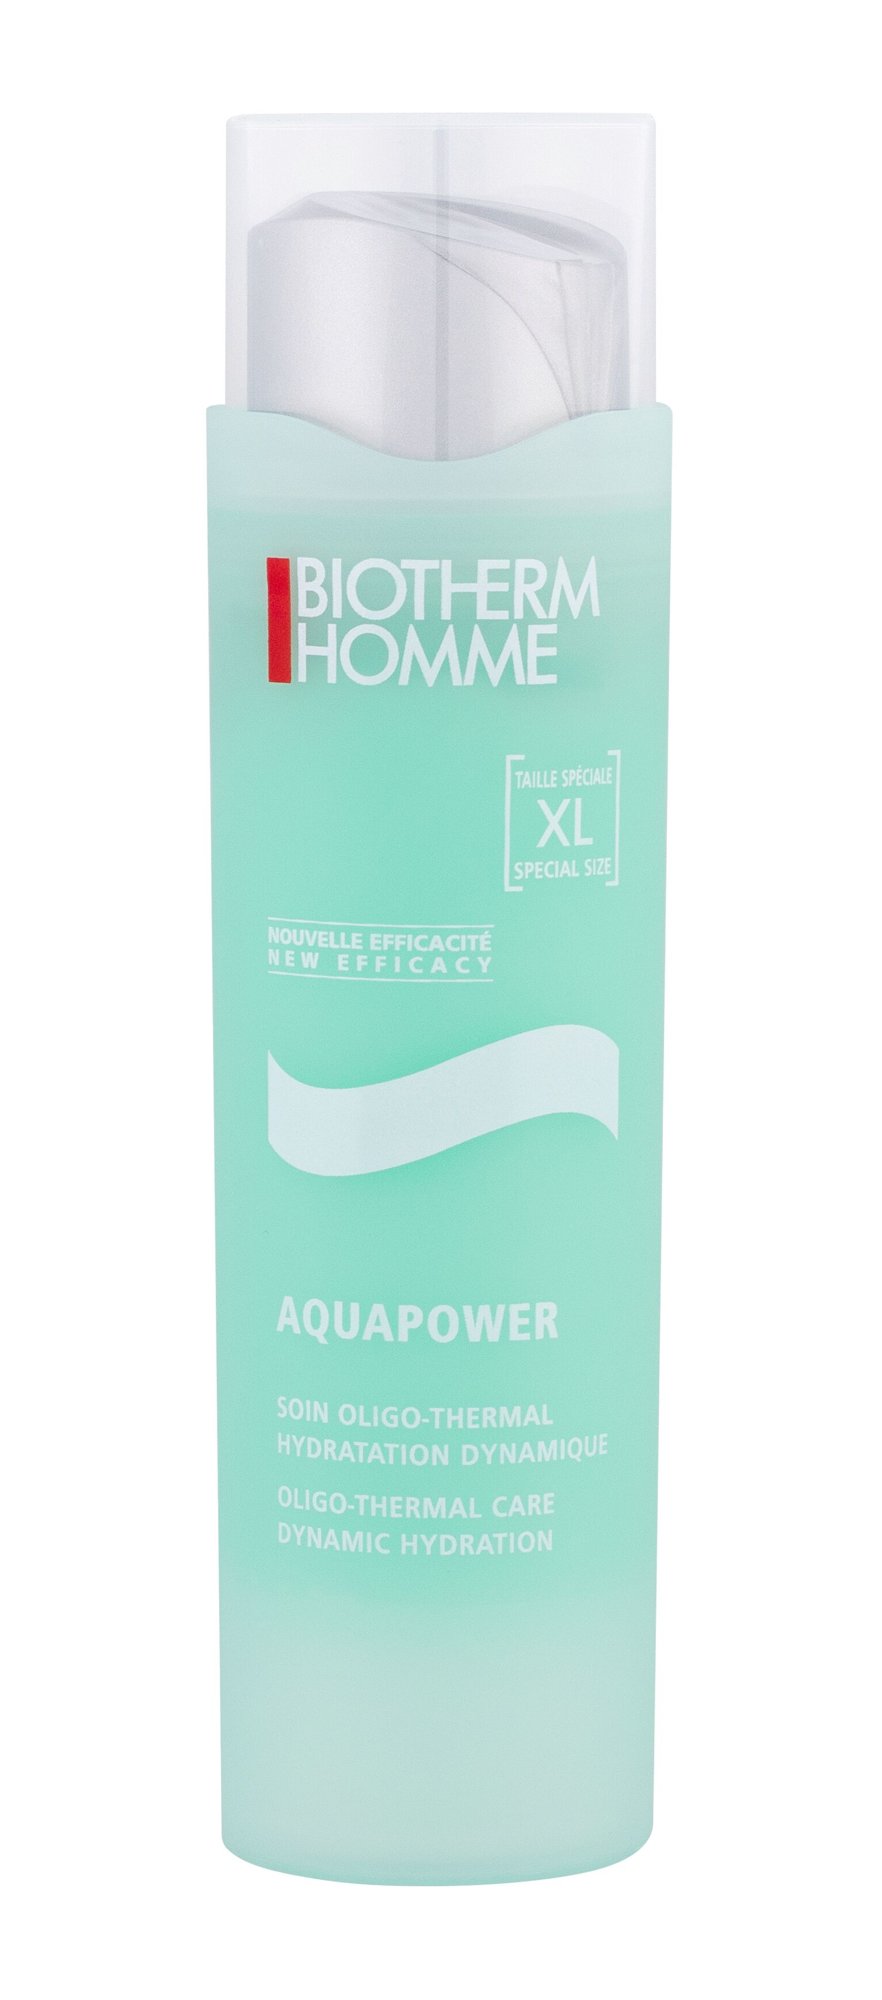 Biotherm Homme Aquapower Oligo Thermal Care 100ml veido gelis (Pažeista pakuotė)